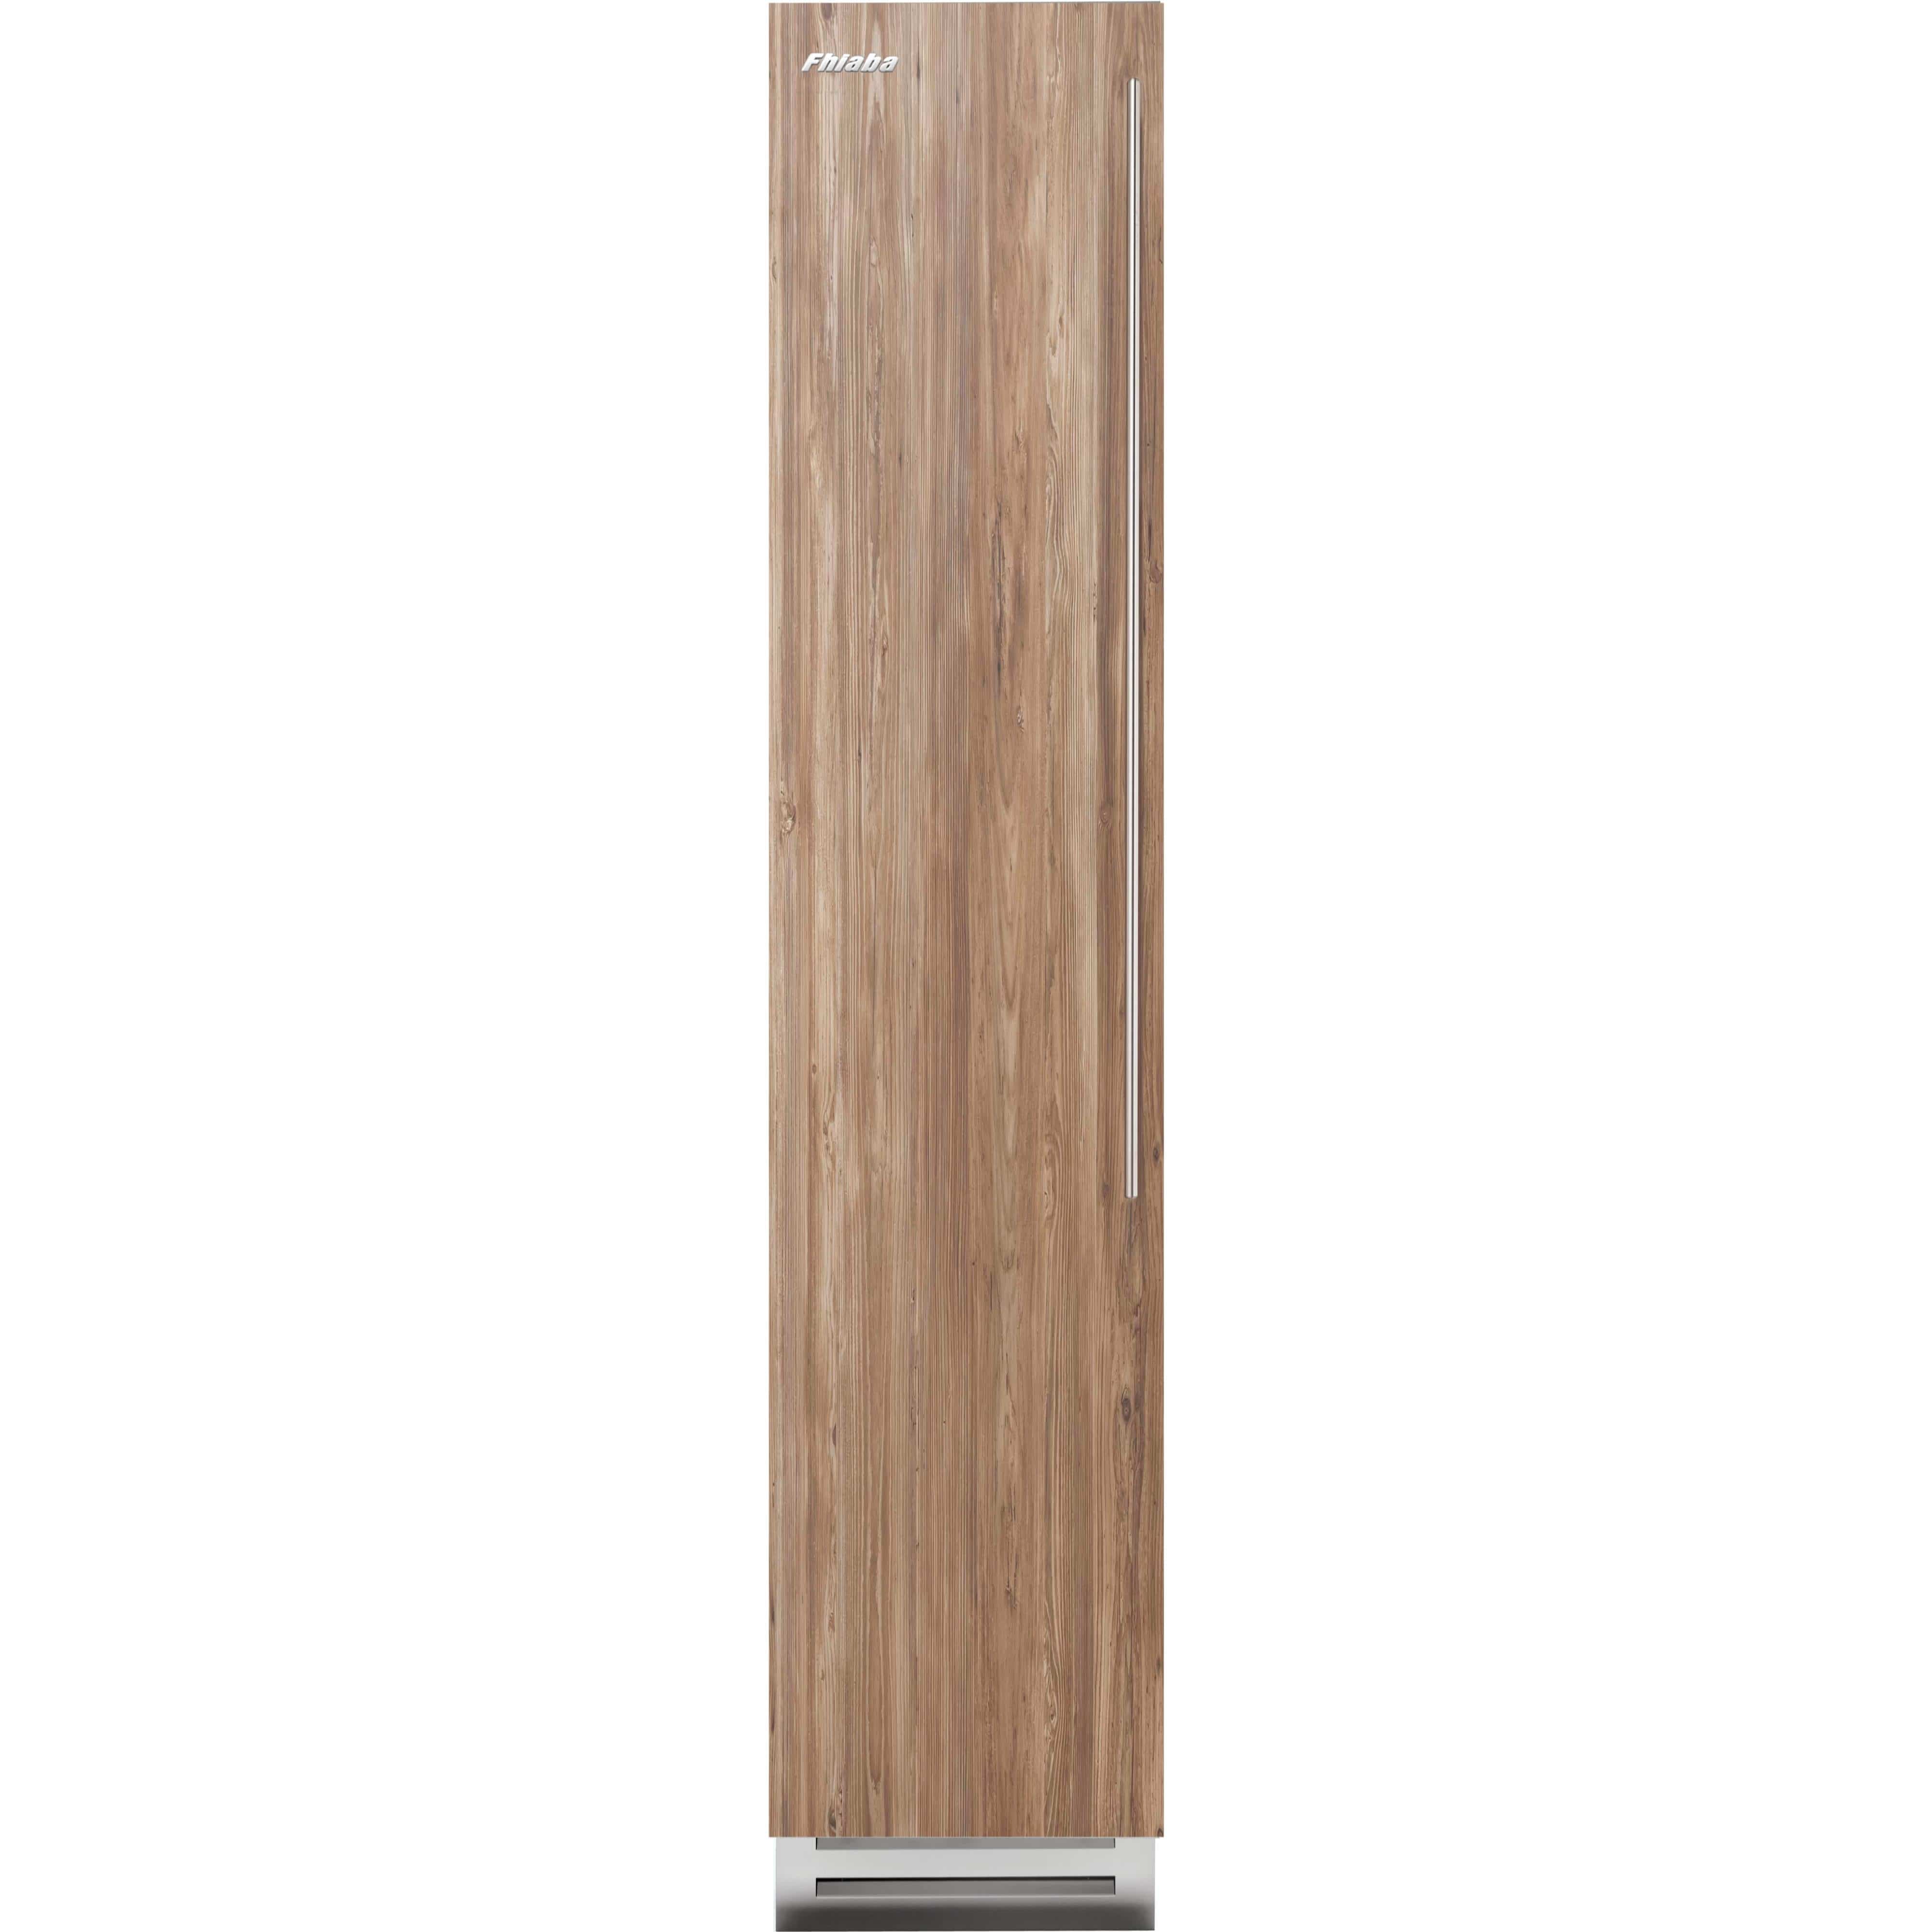 Fhiaba 8.22 cu. ft. Upright Freezer with Smart Touch TFT Display FI18FZC-LO2 Freezers FI18FZCLO2 Luxury Appliances Direct